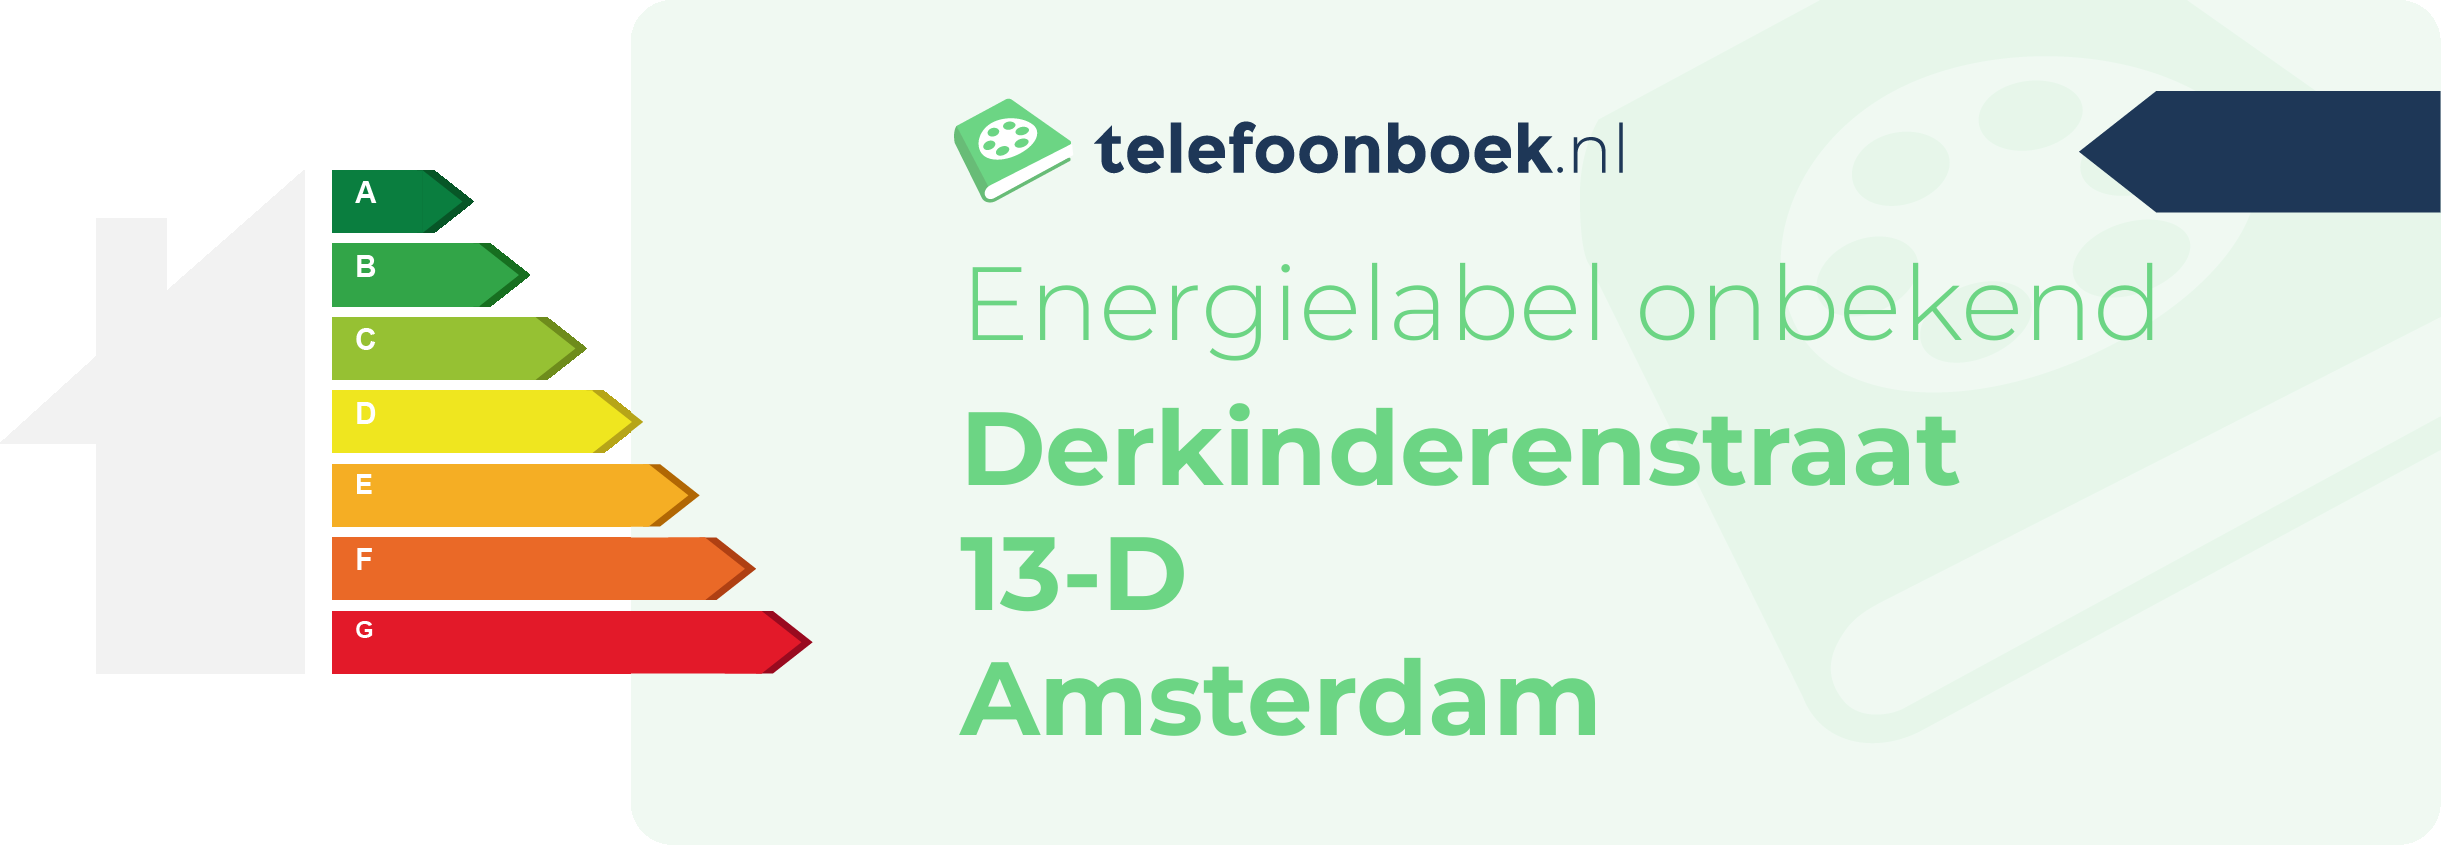 Energielabel Derkinderenstraat 13-D Amsterdam